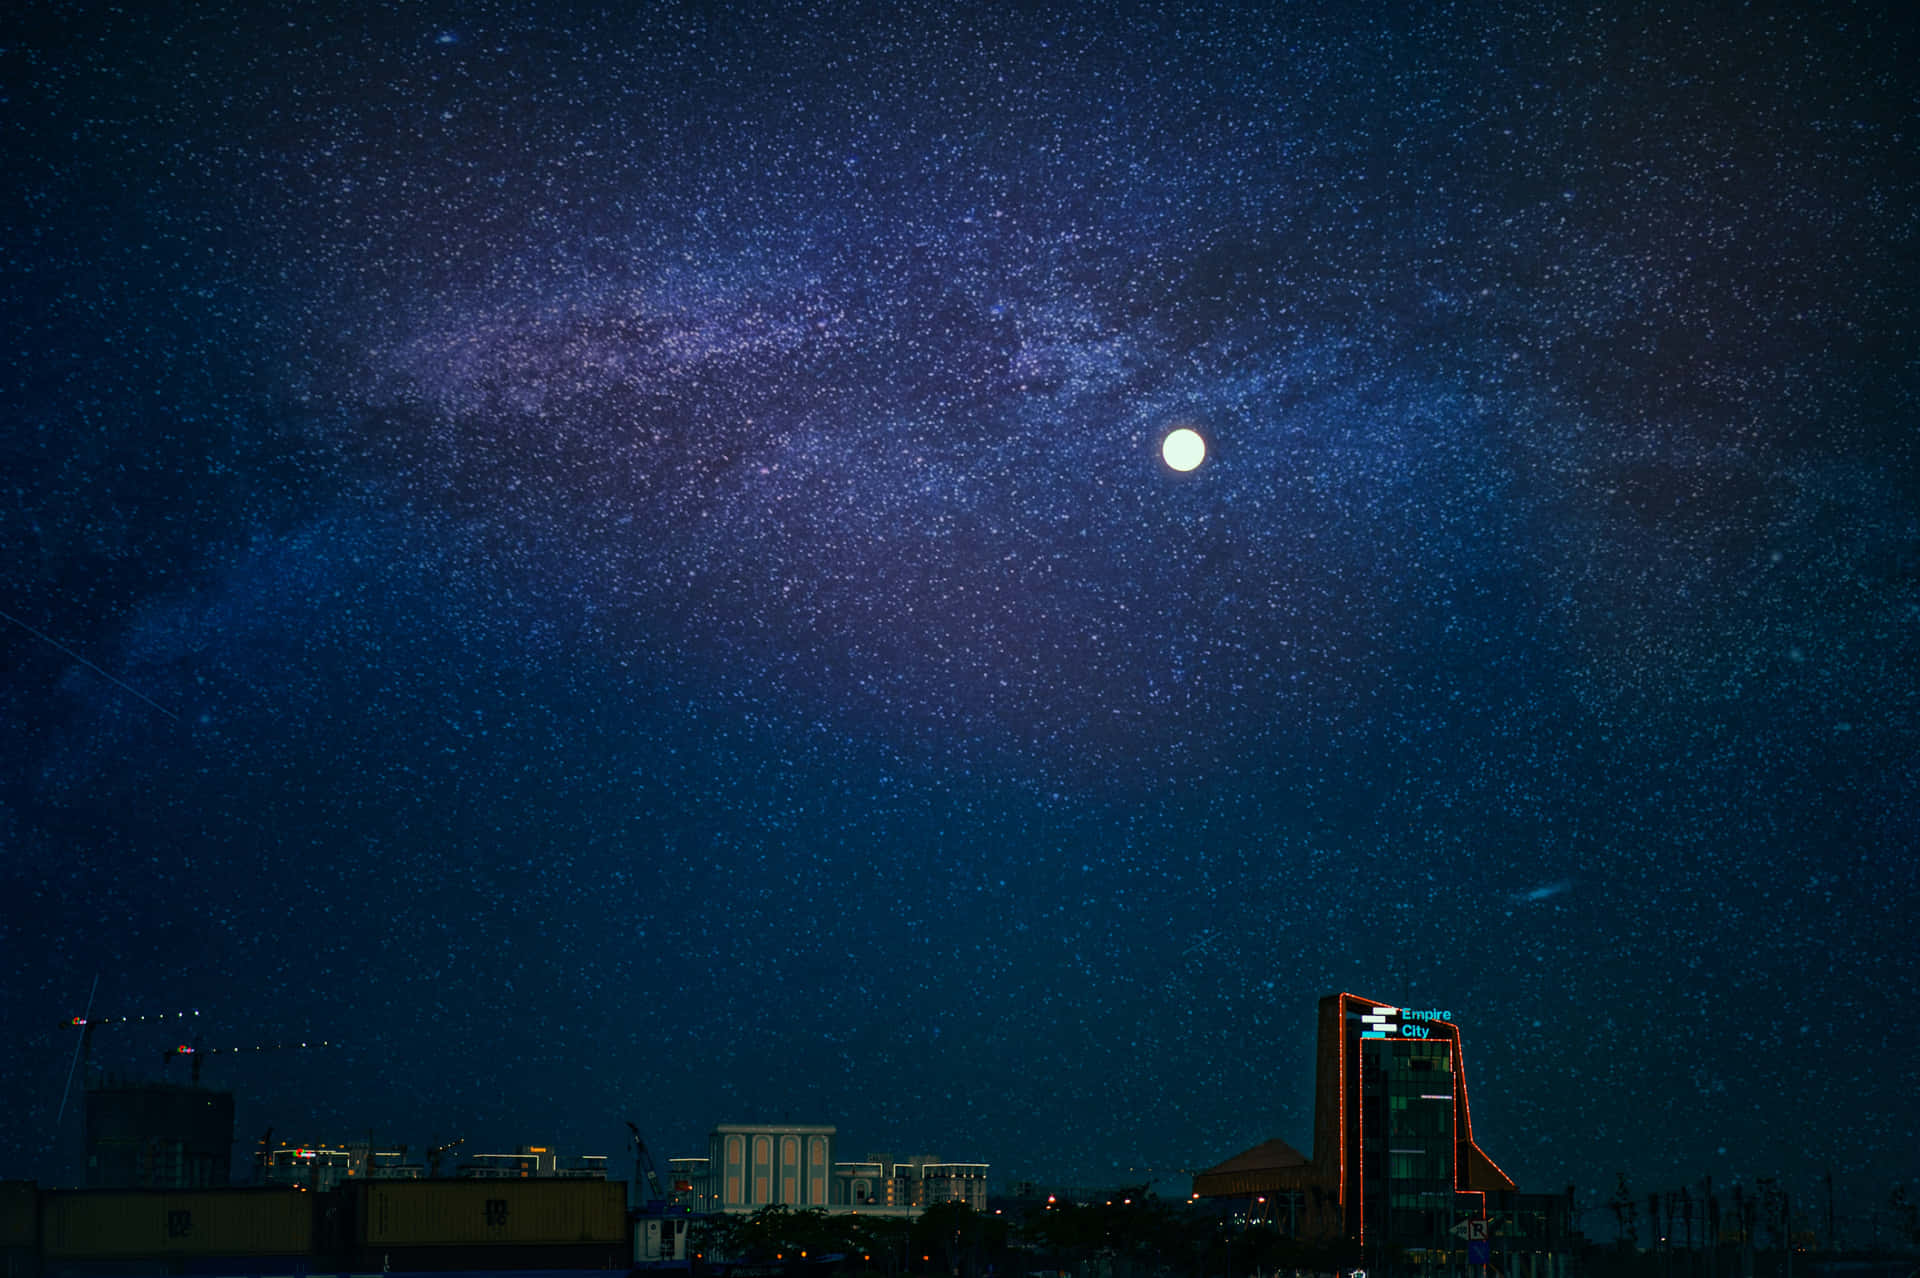 Imagende La Ciudad Con La Luna En El Cielo Nocturno.